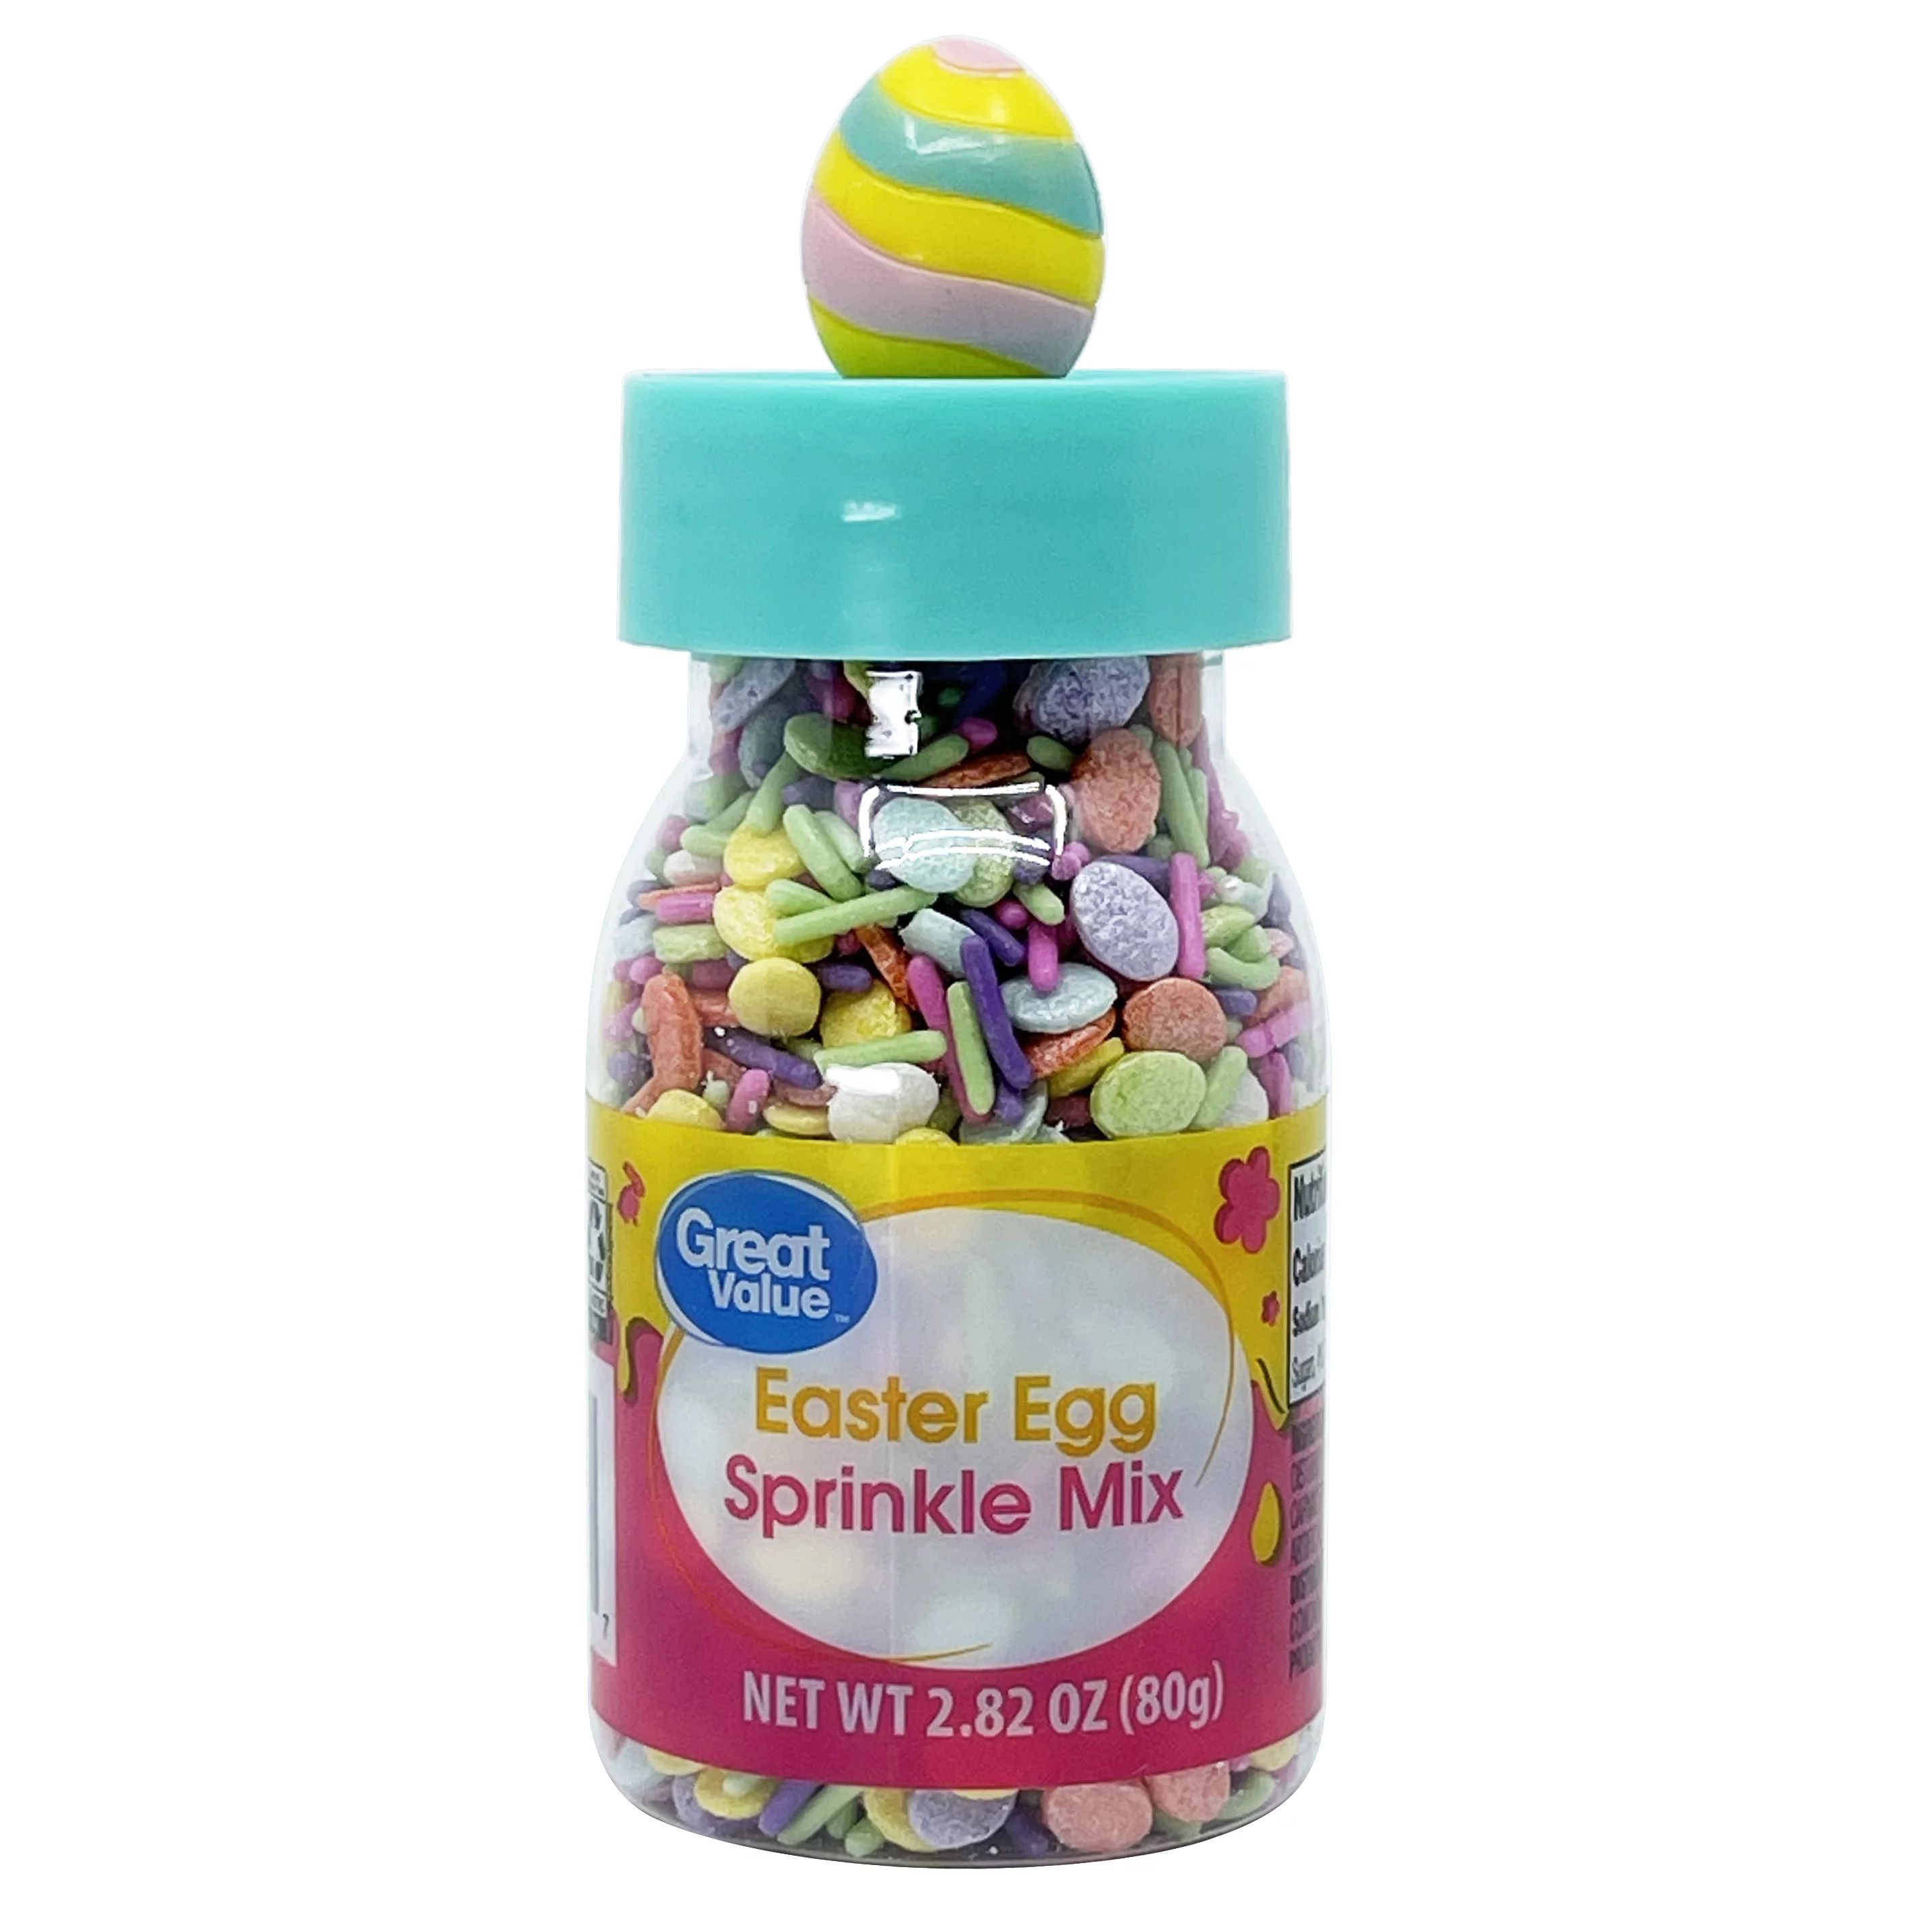 Great Value Easter Egg Sprinkle Mix, 2.82 oz - Walmart.com | Walmart (US)